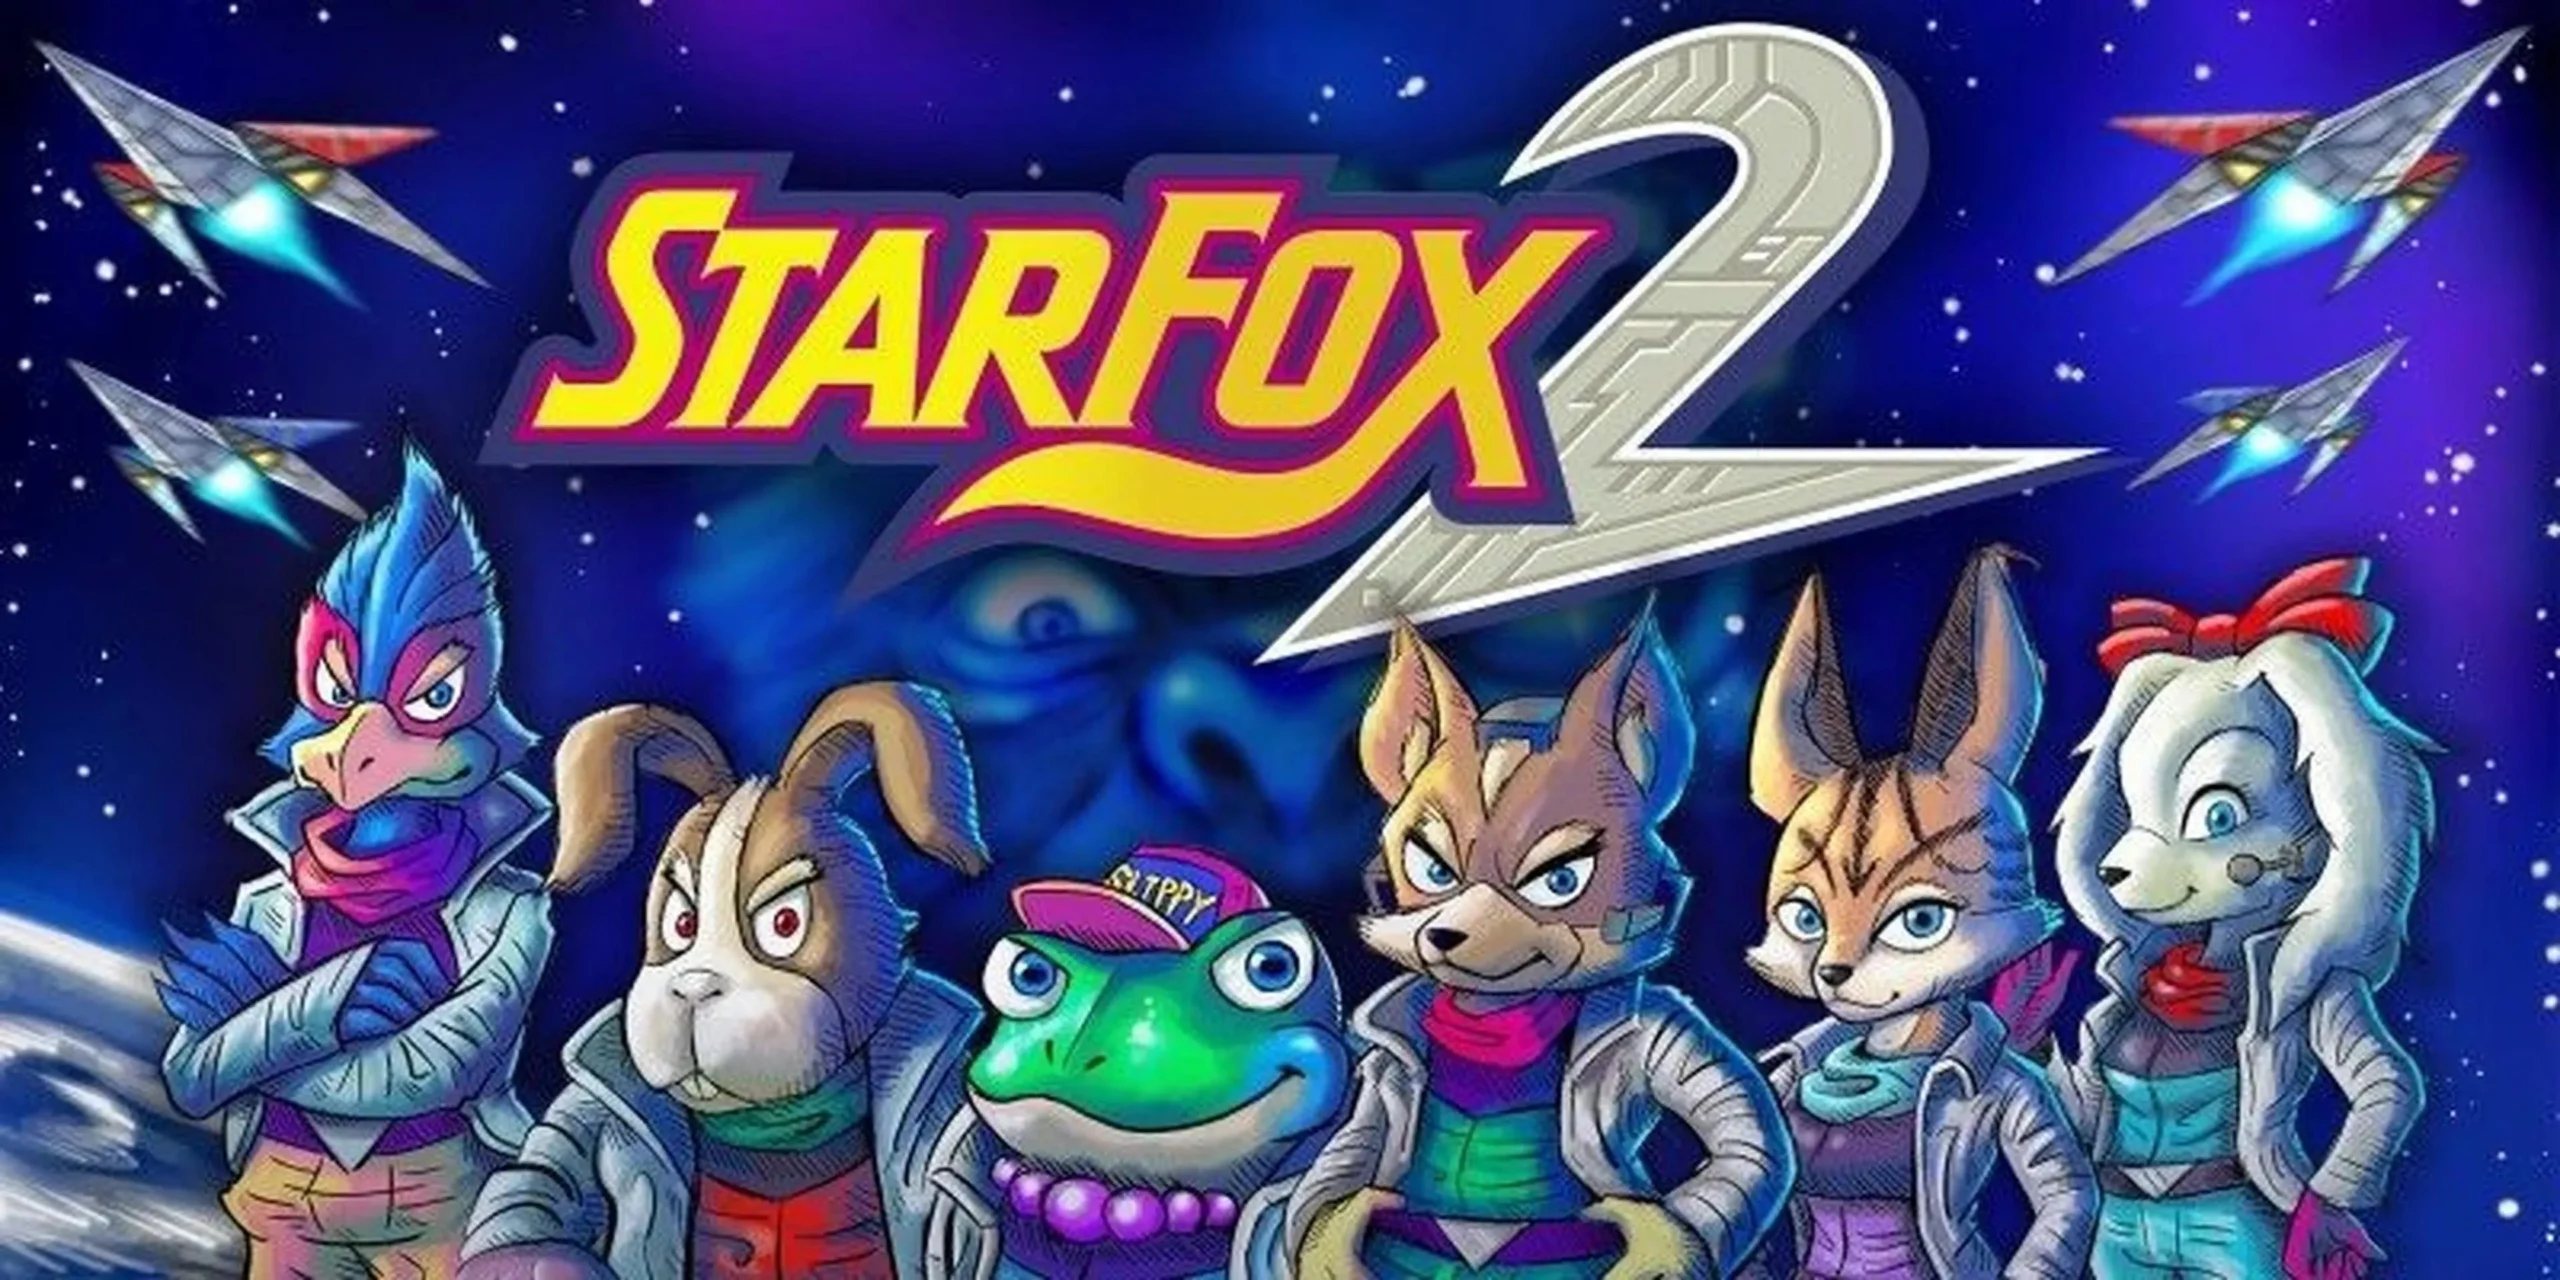 jugar star fox online - Cuántos juegos de Star Fox hay